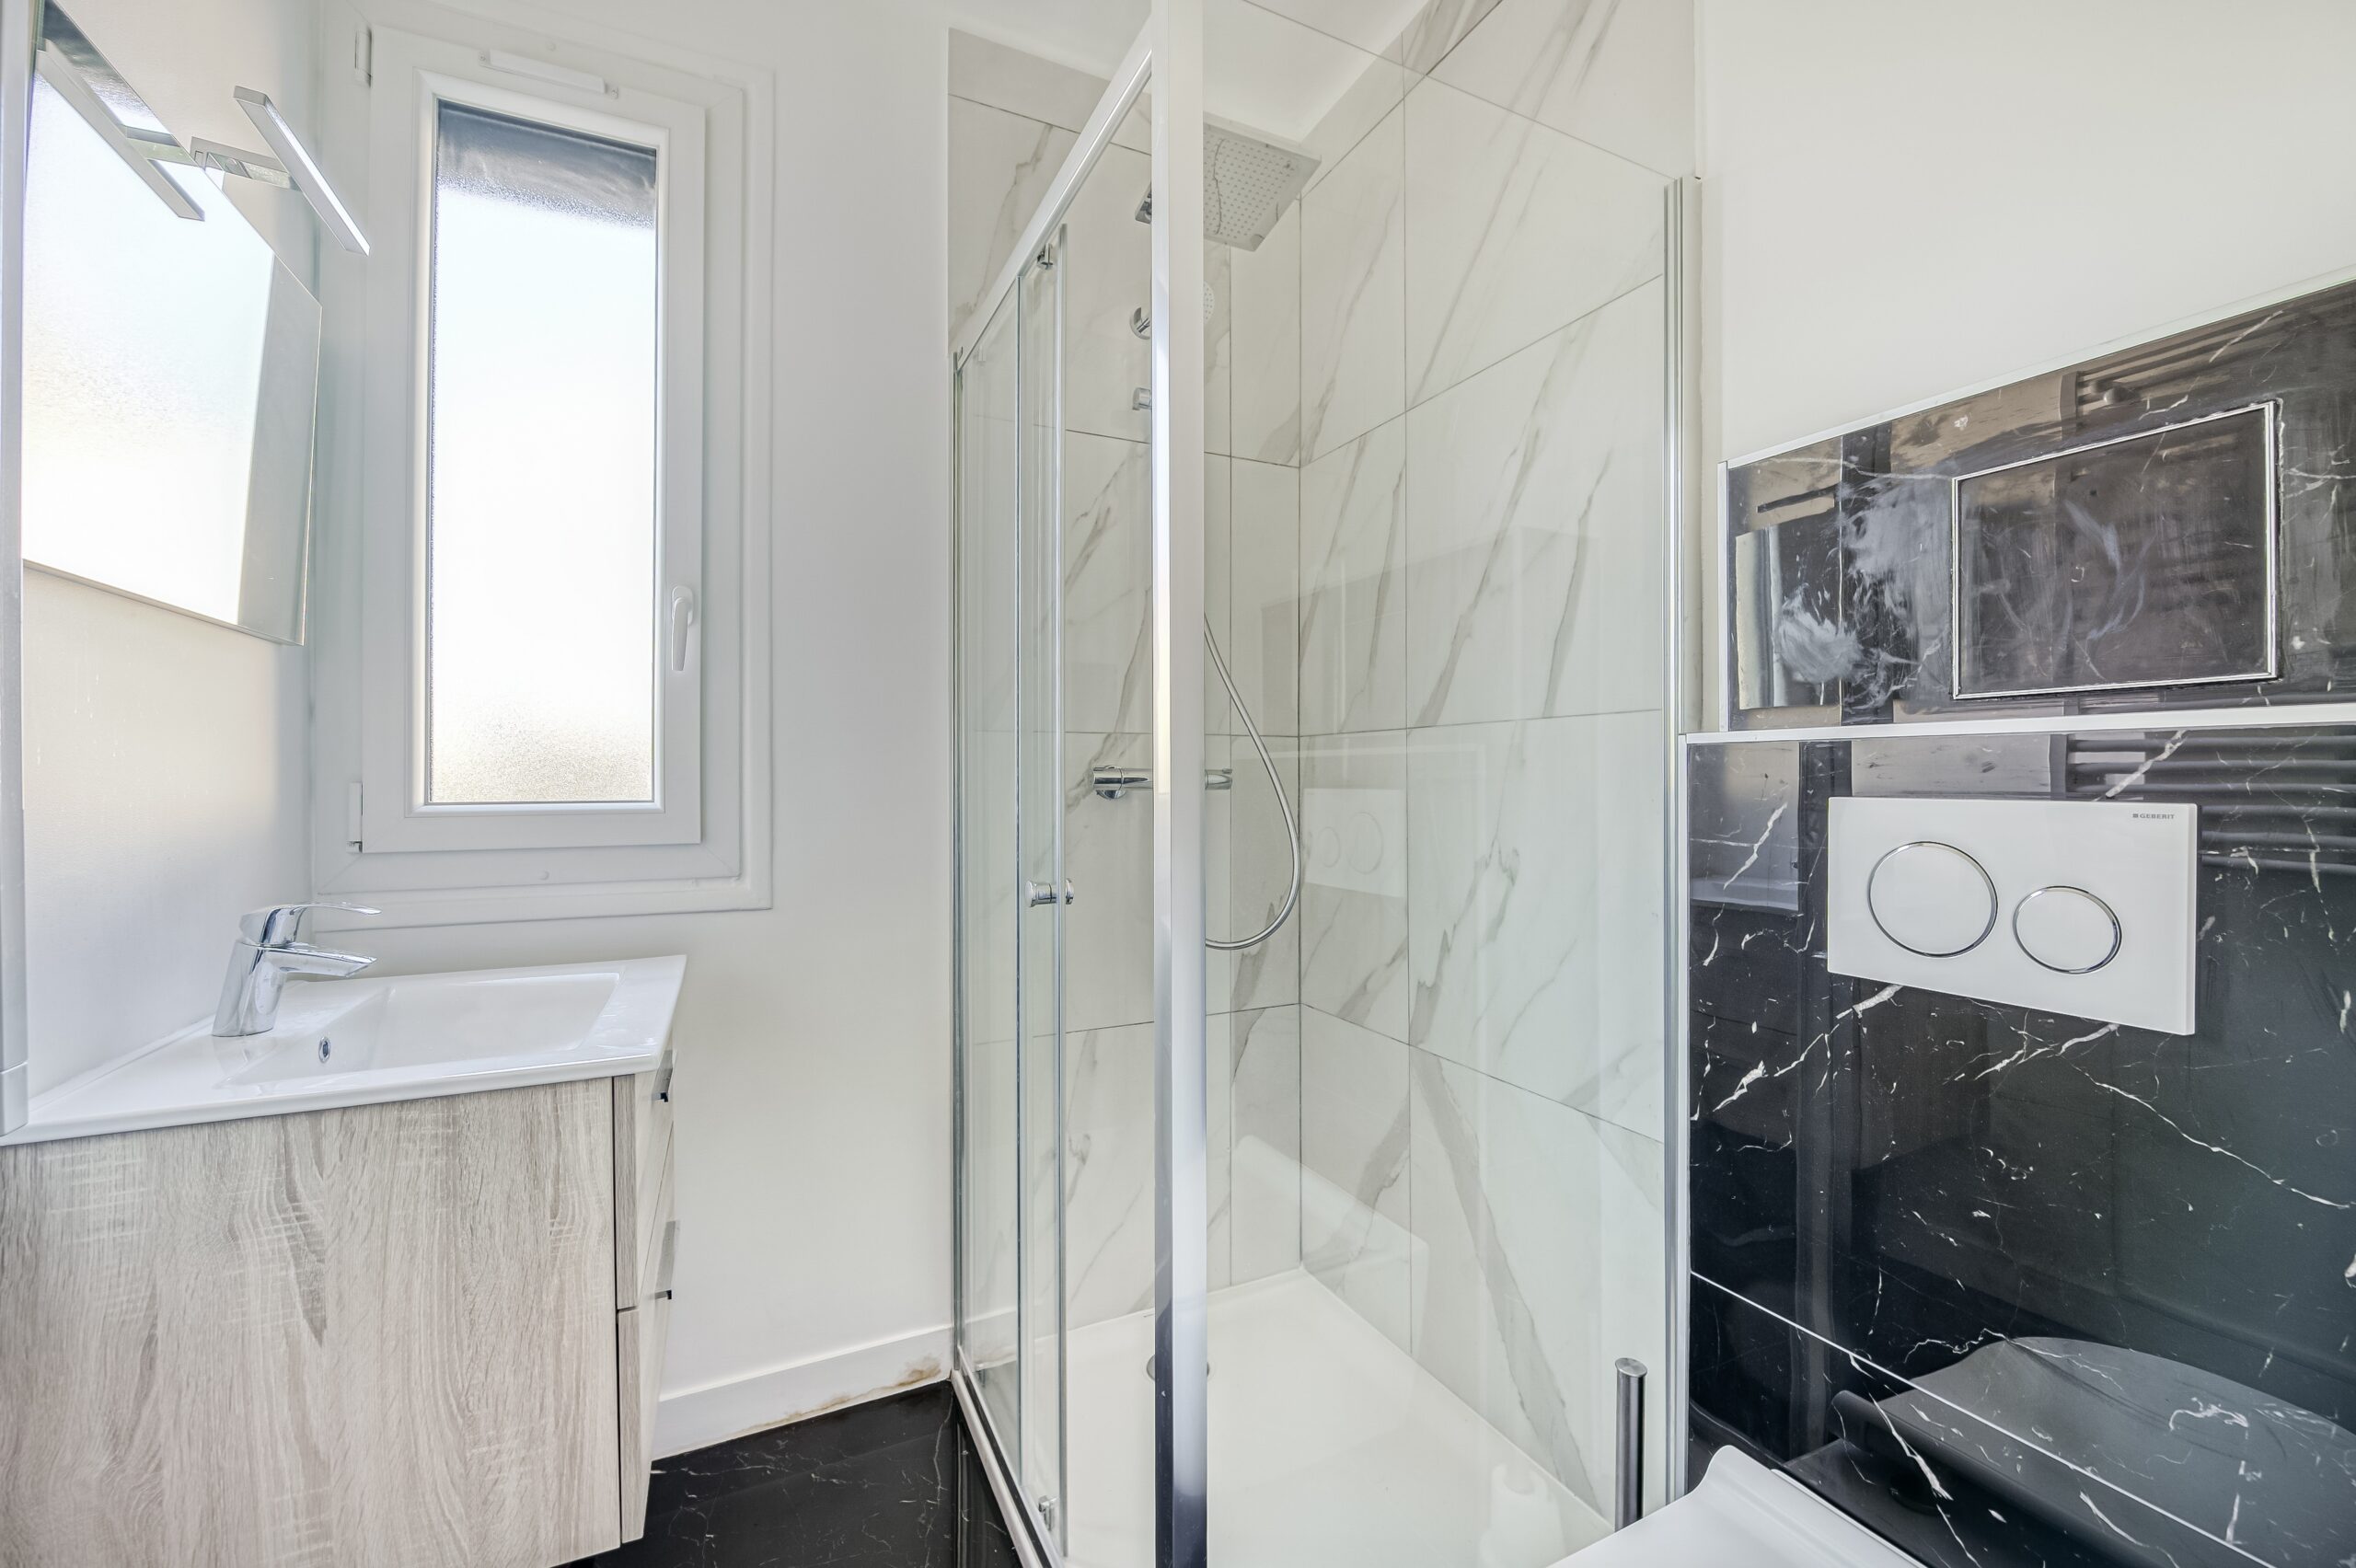 Rénovation complète d’une salle de bain à Bry-sur-Marne | Résultats